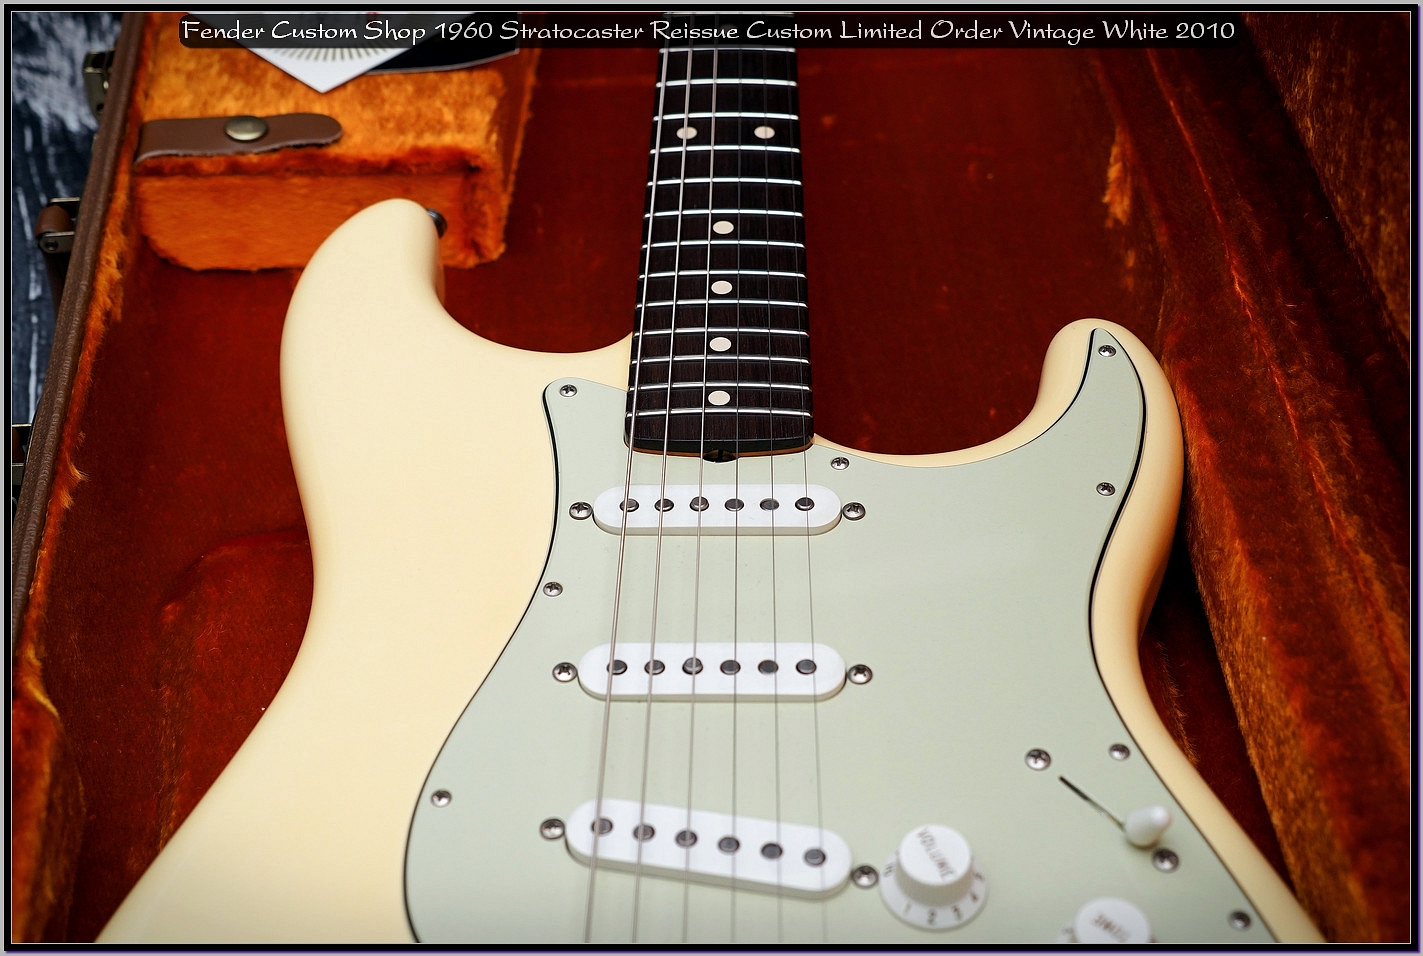 Fender Custom Shop 1960 Stratocaster Reissue Custom Order Noiseless Vintage White 2010